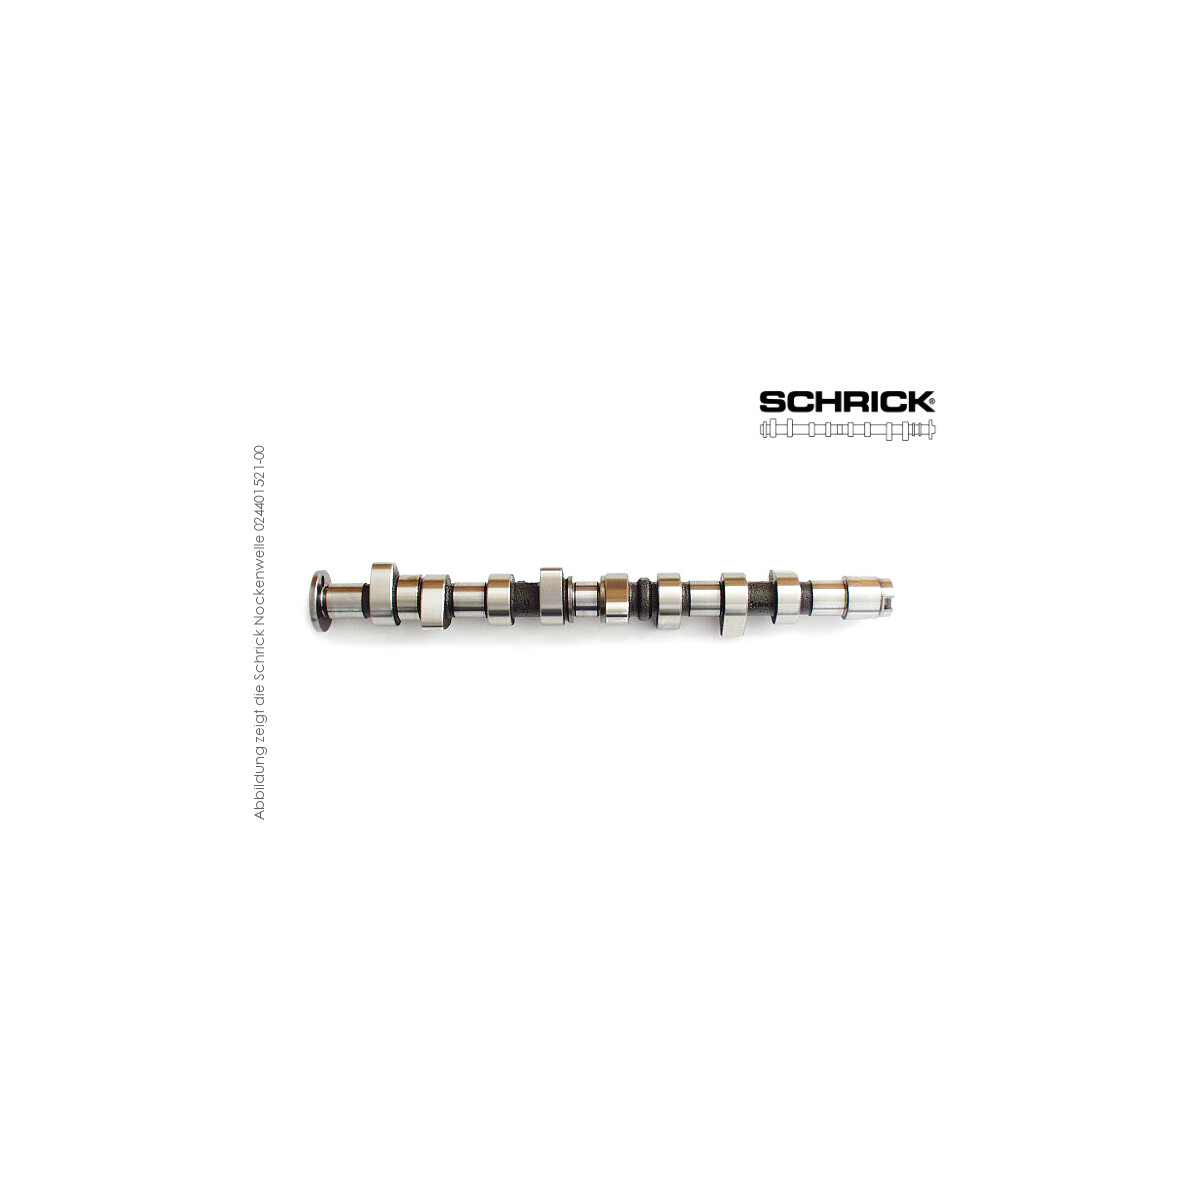 Schrick Nockenwelle für VW Golf 1-2, Polo, Derby, Audi 50 | 0,9-1,3L 8V 4-Zyl.  | 316° Synchron (Schrick 001301160-00)